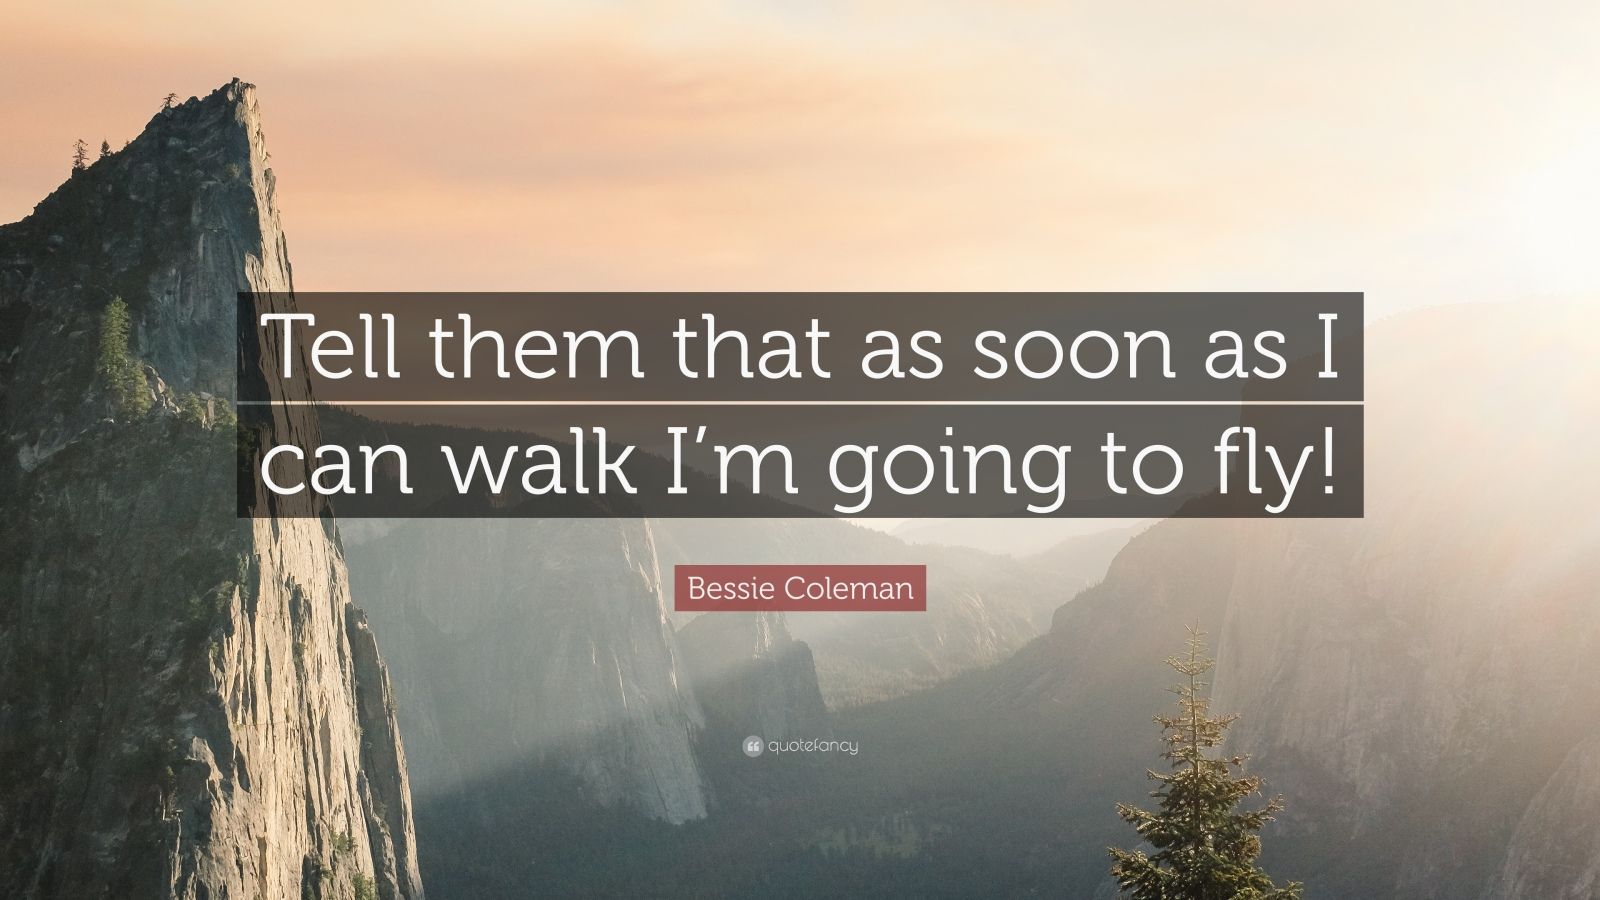 Top 5 Bessie Coleman Quotes (2021 Update) - Quotefancy